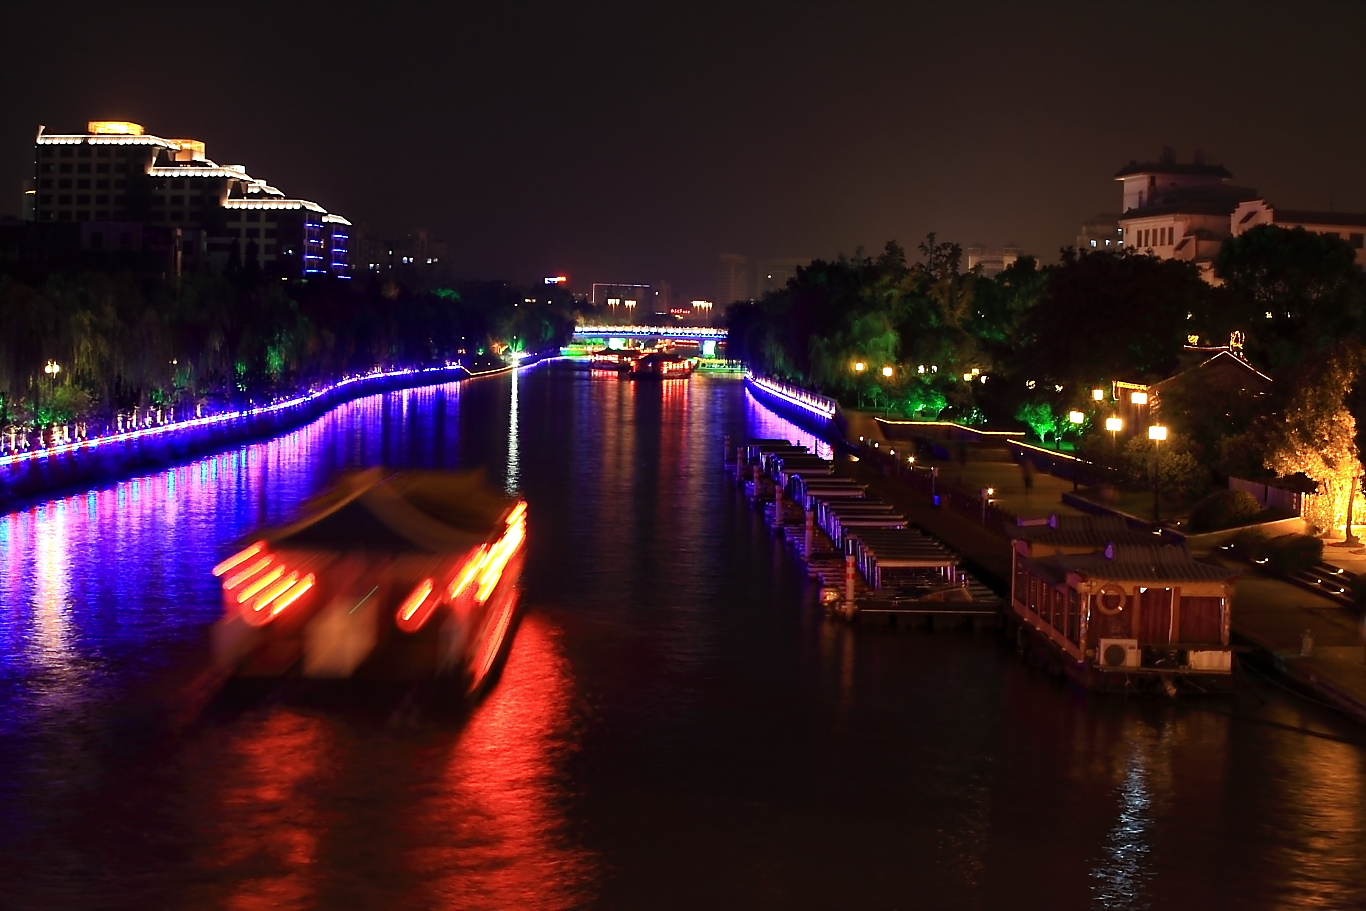 Jiangsu yangzhou grand canal night view photo image_picture free download 501285802_lovepik.com